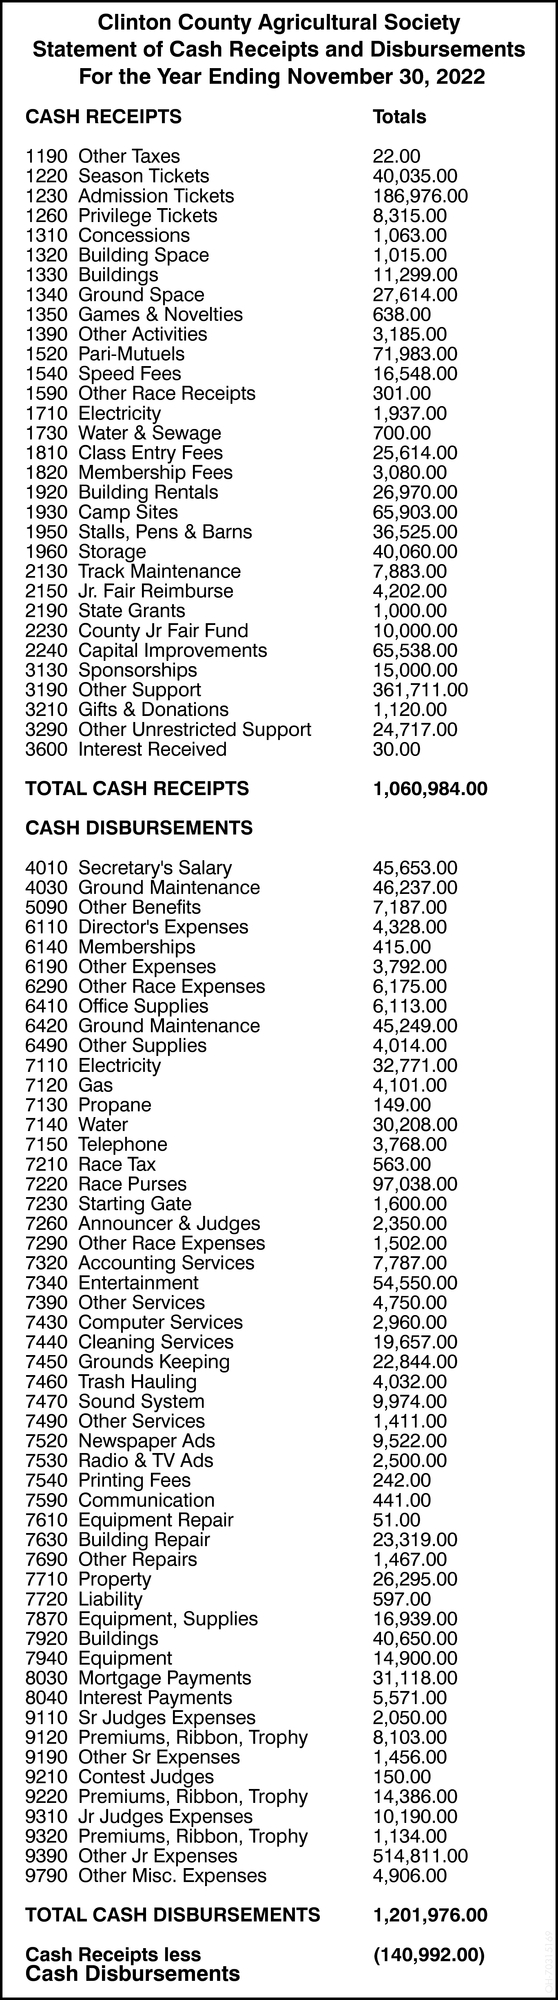 Cash Receipts and Disbursements